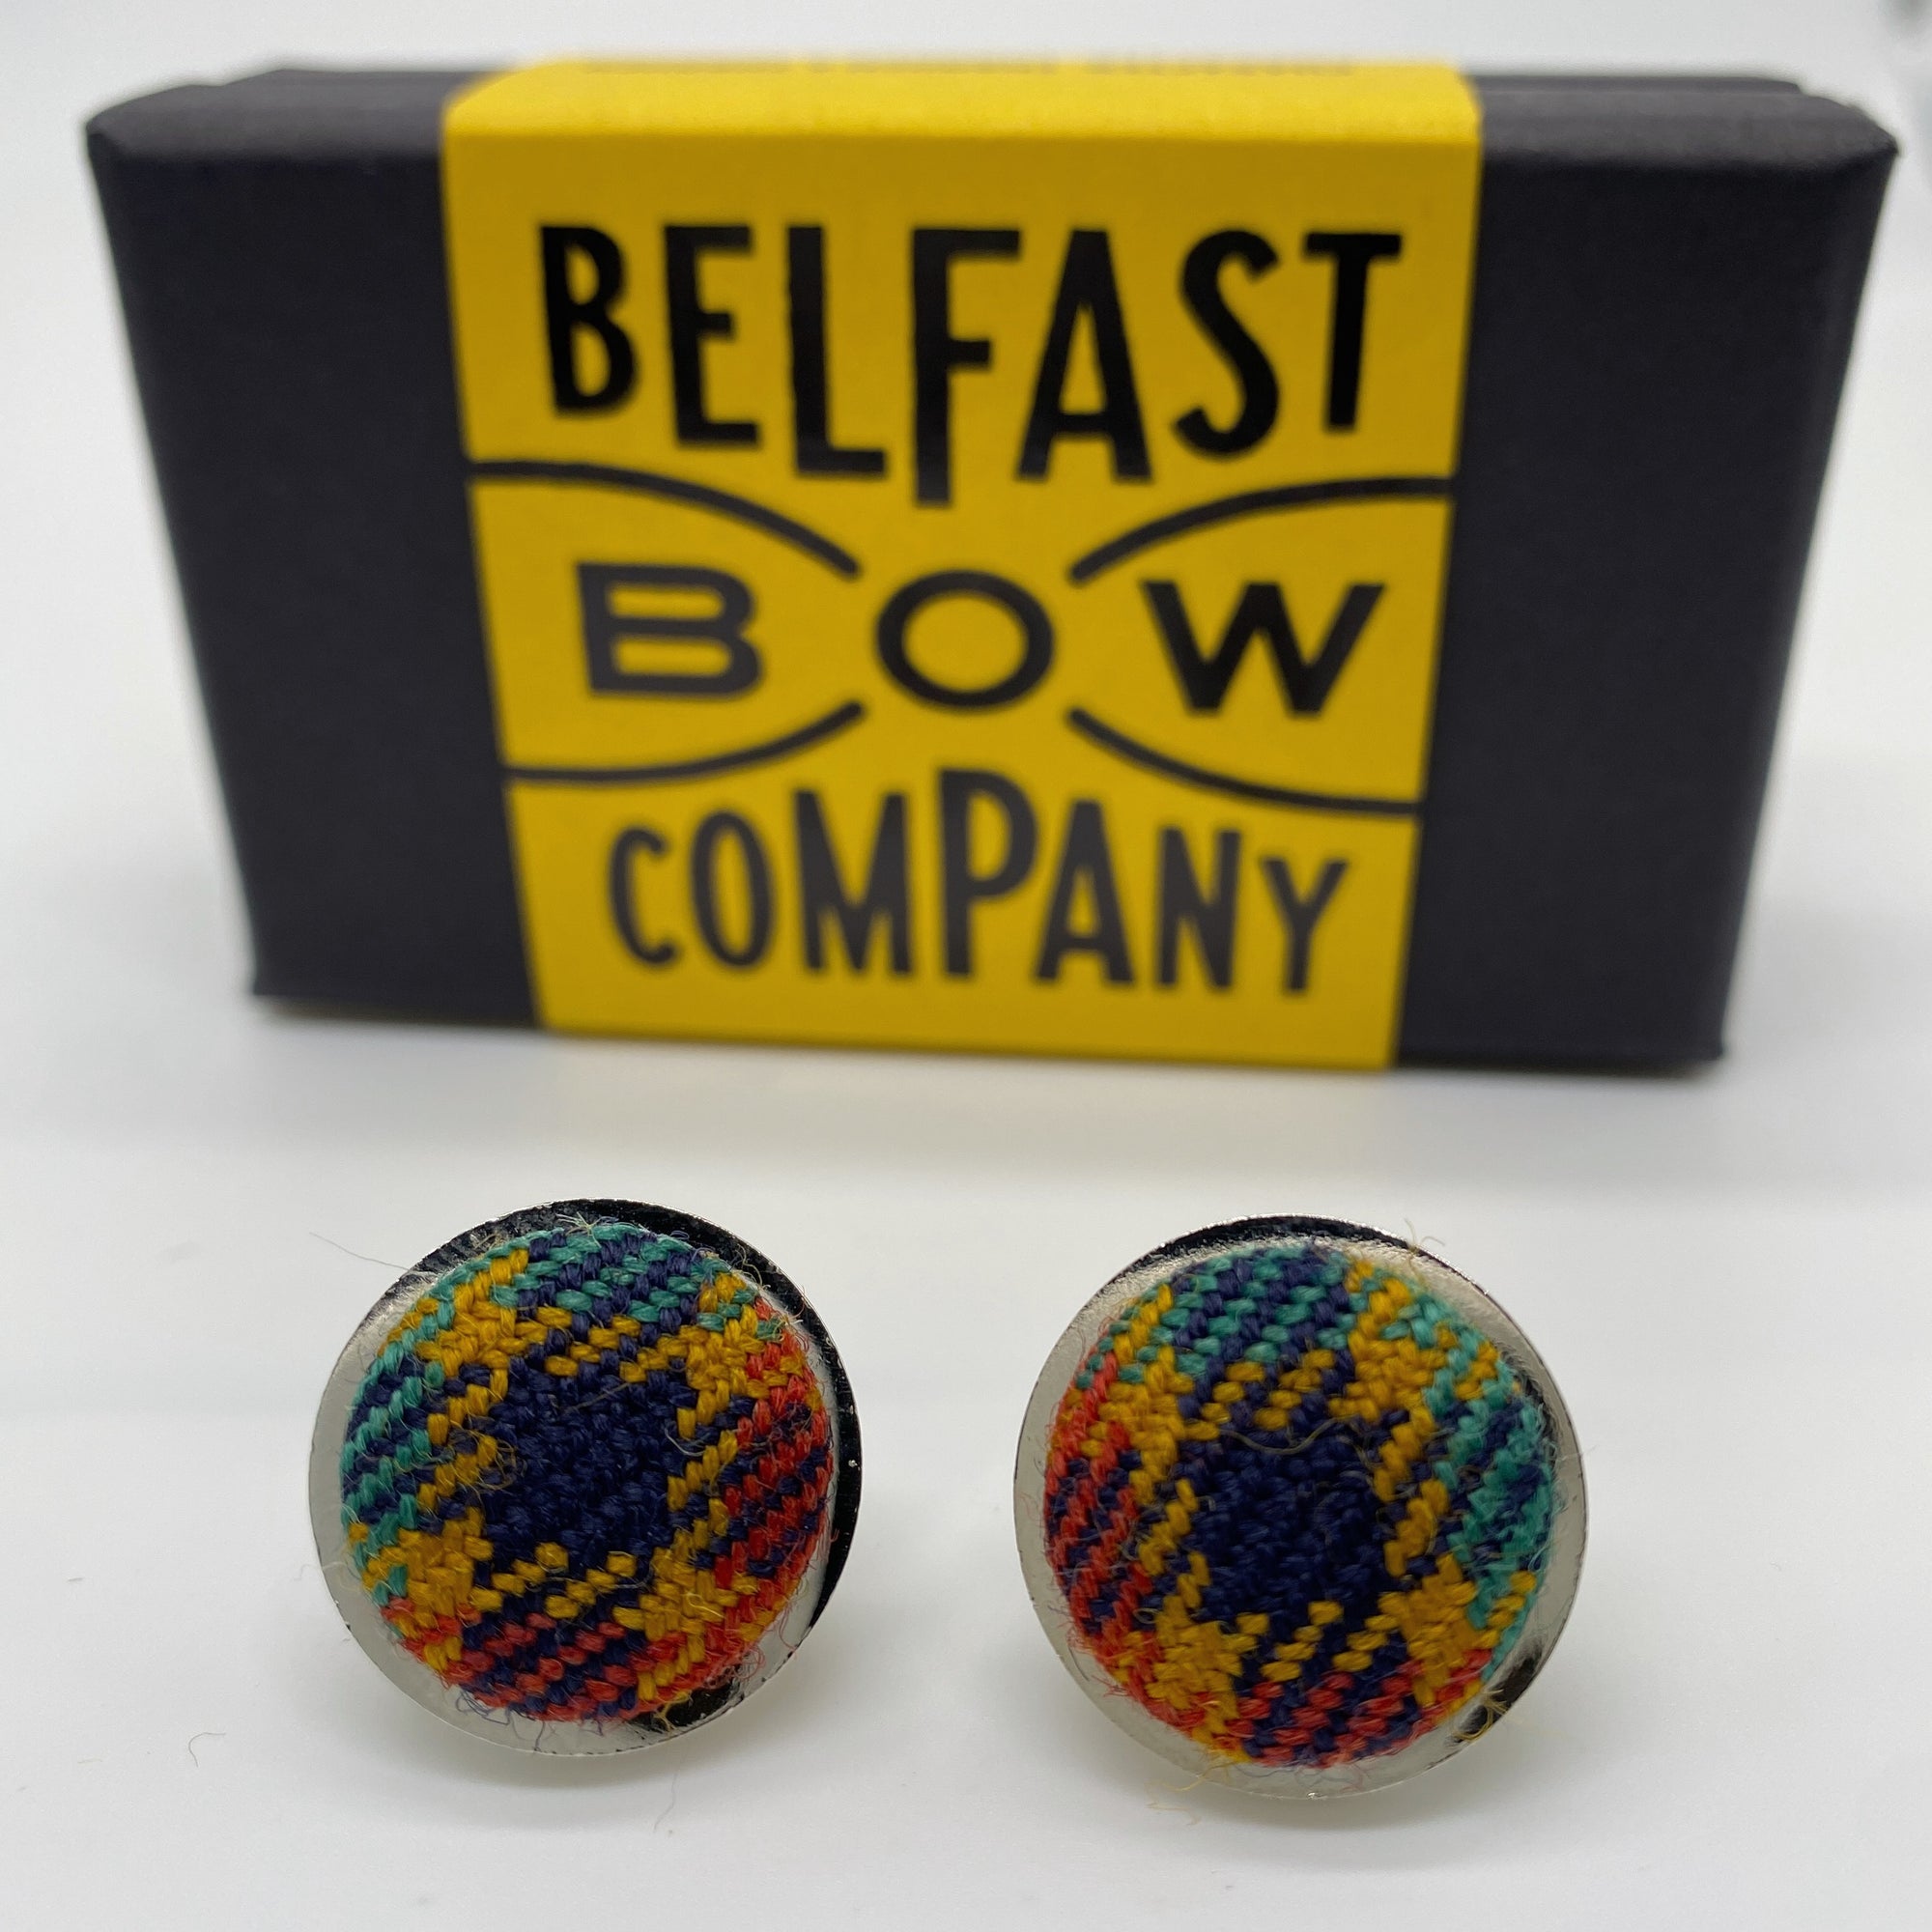 County Antrim Tartan Cufflinks by the Belfast Bow Company